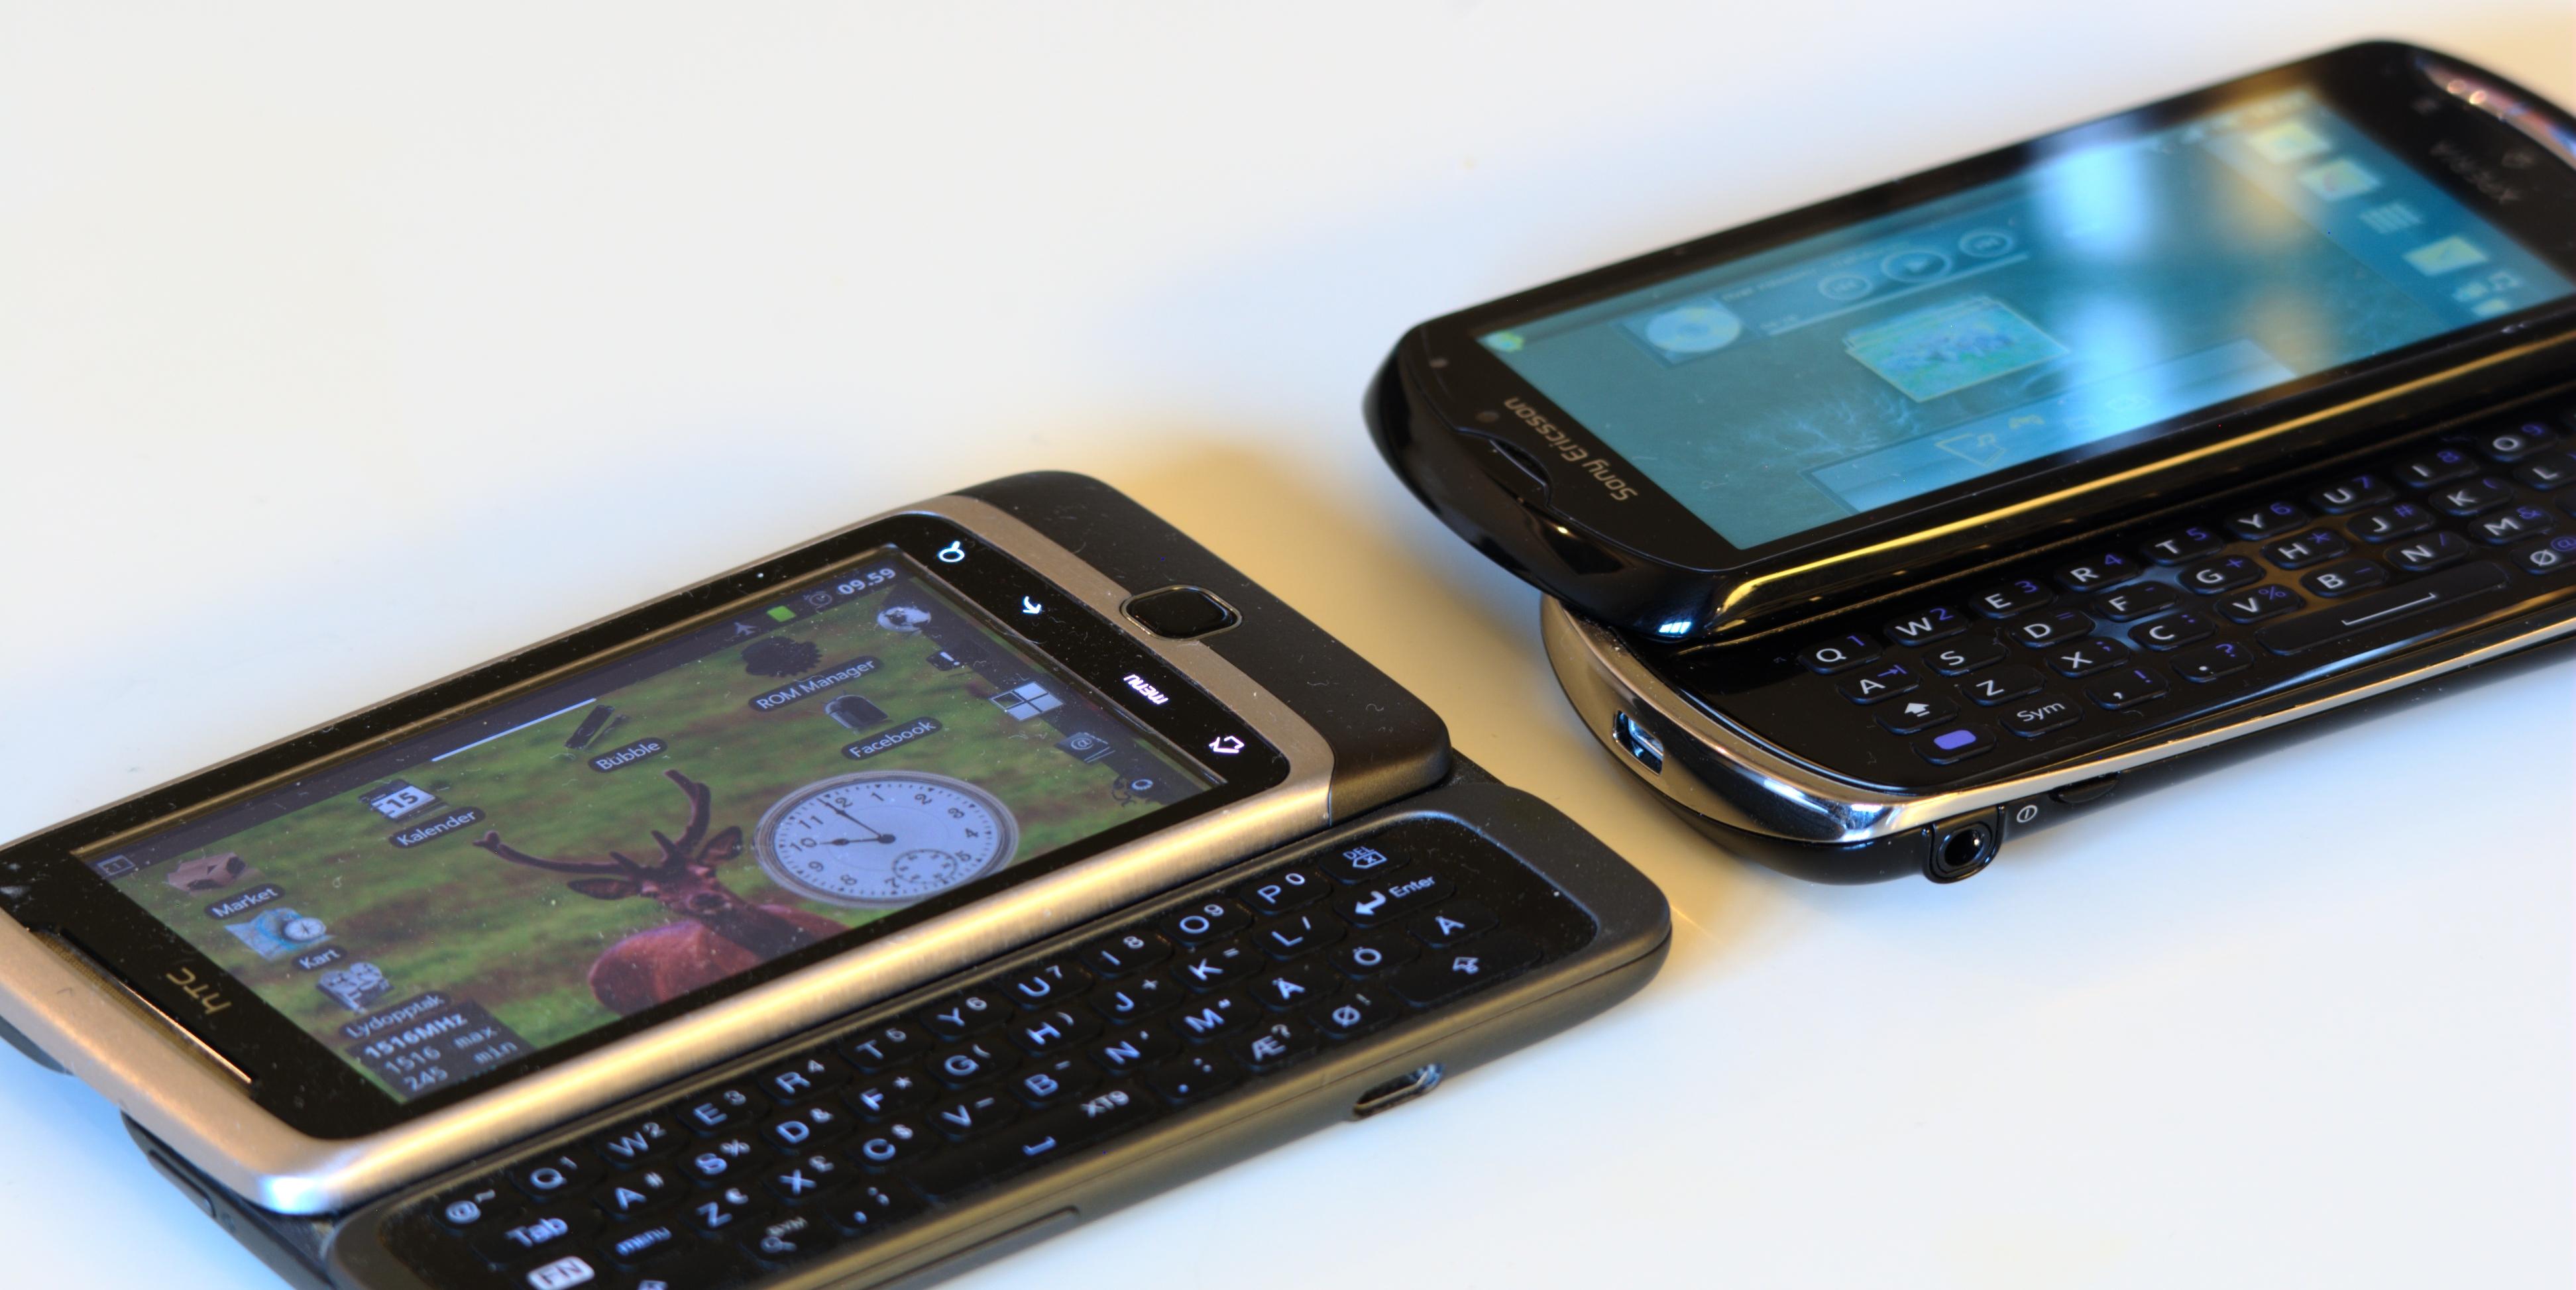 Xperia pro (til høyre) har en litt annen tasteplassering enn det som er vanlig. Her sammenlignet med HTC Desire Z (til venstre). (Foto: Einar Eriksen)